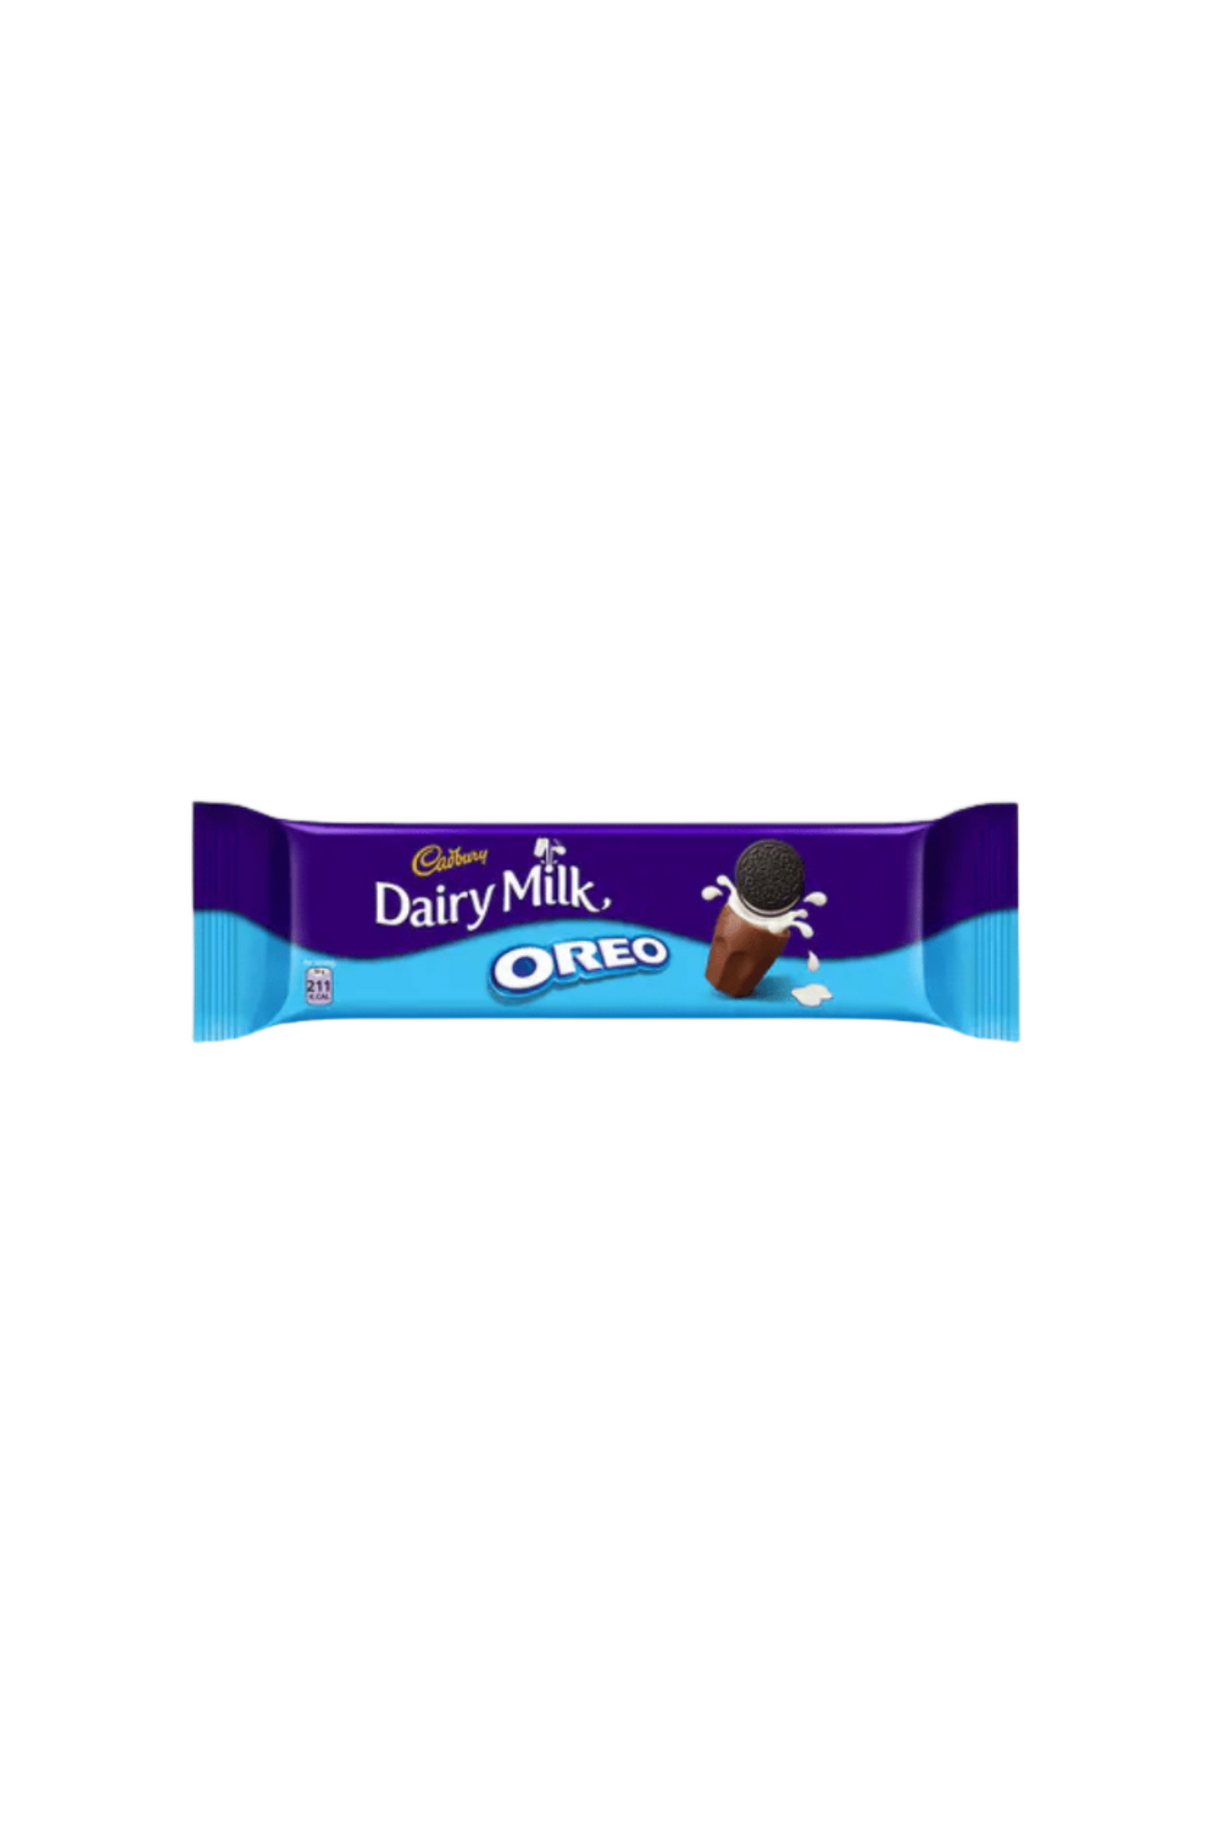 cadbury chocolate dairy milk oreo 38g